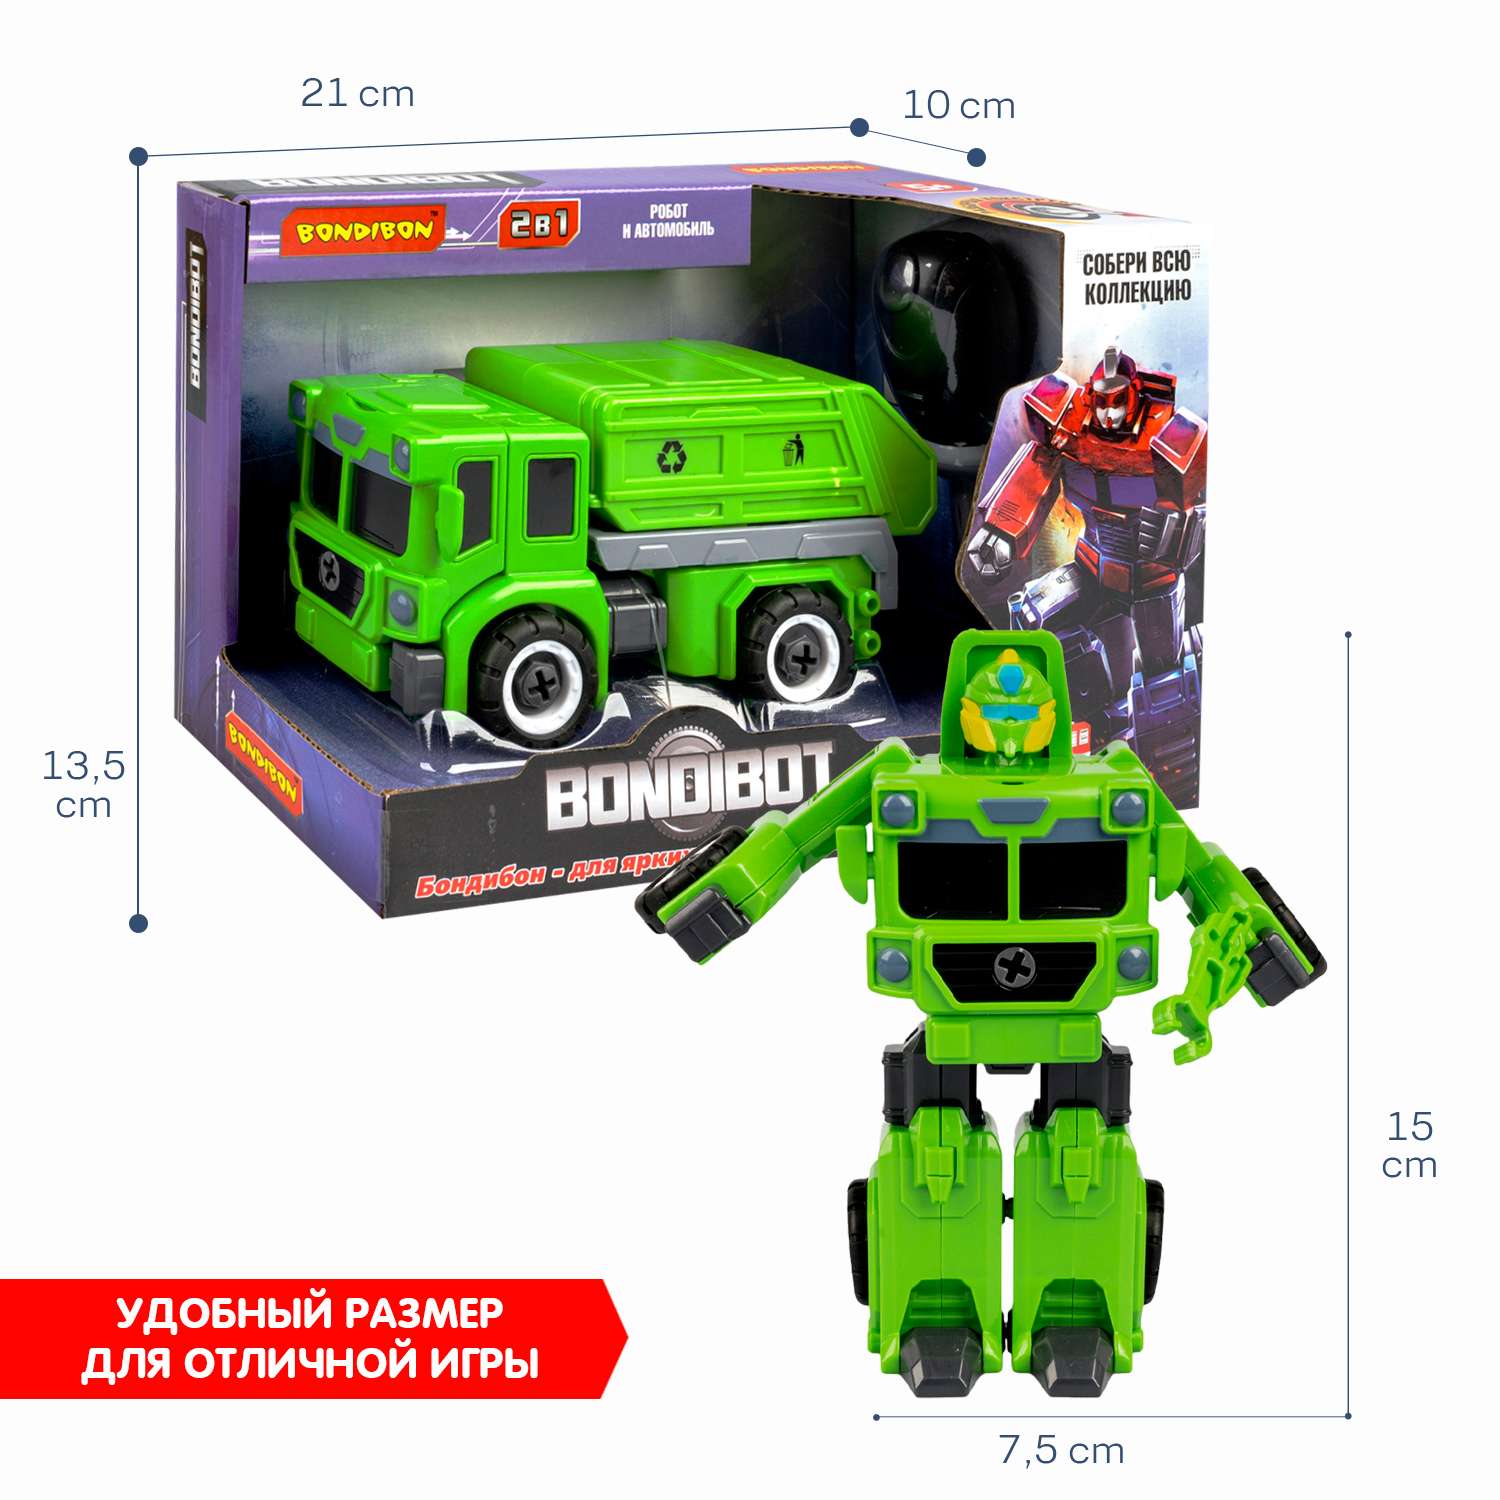 Трансформер-конструктор BONDIBON Bondibot Робот-мусоровоз 2 в 1 зеленого цвета с отвёрткой - фото 6